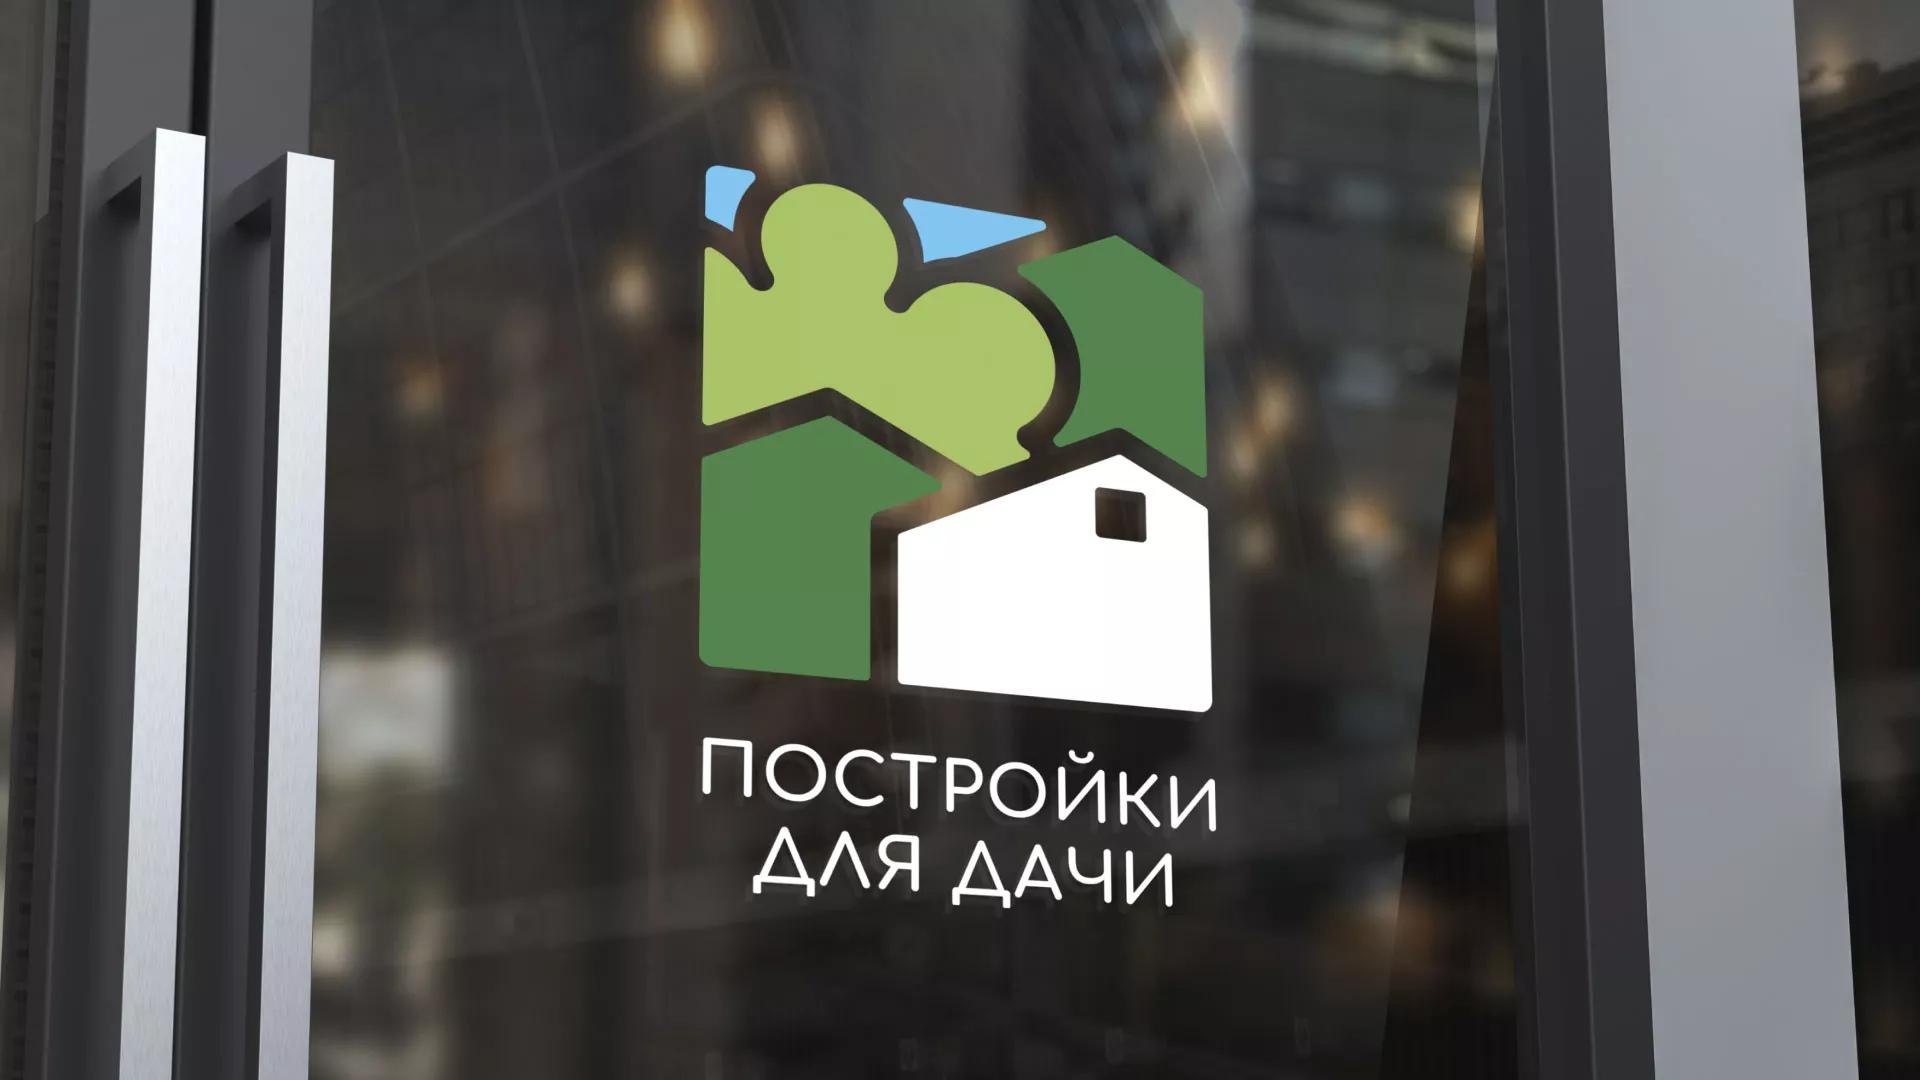 Разработка логотипа в Усть-Катаве для компании «Постройки для дачи»